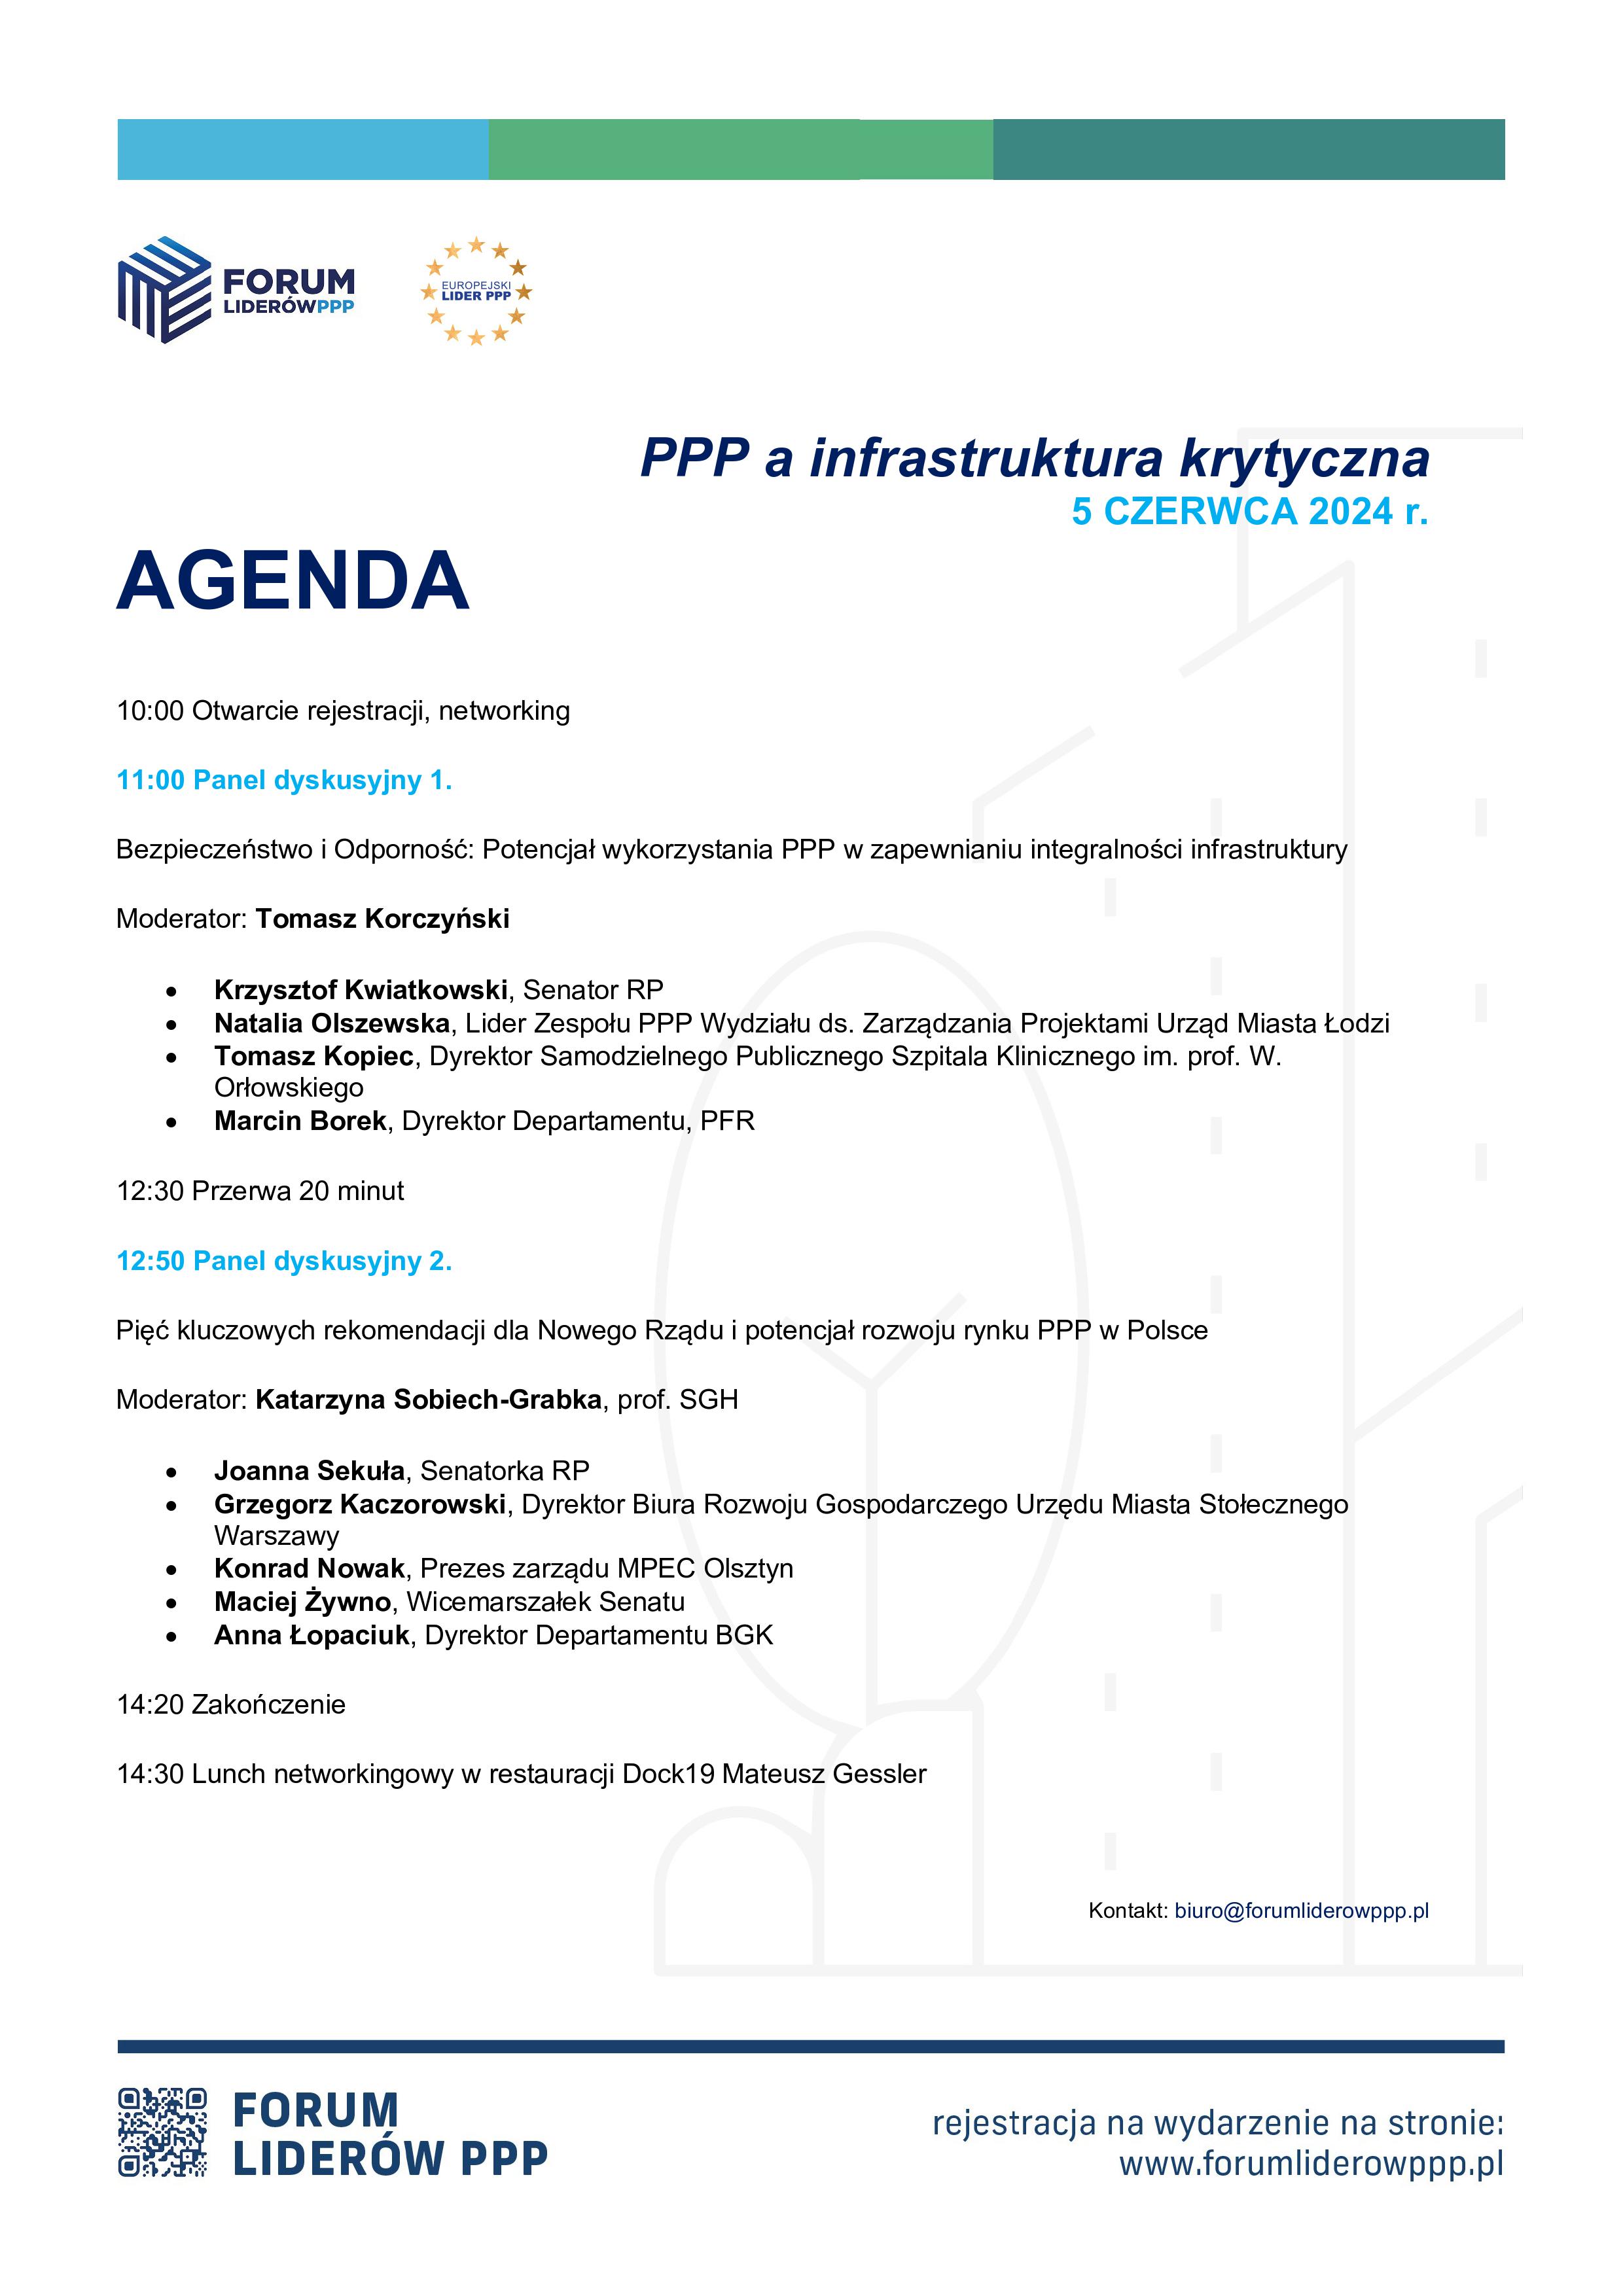 Forum Liderów PPP 2024 - w dniu 5 czerwca 2024 r. w Warszawie